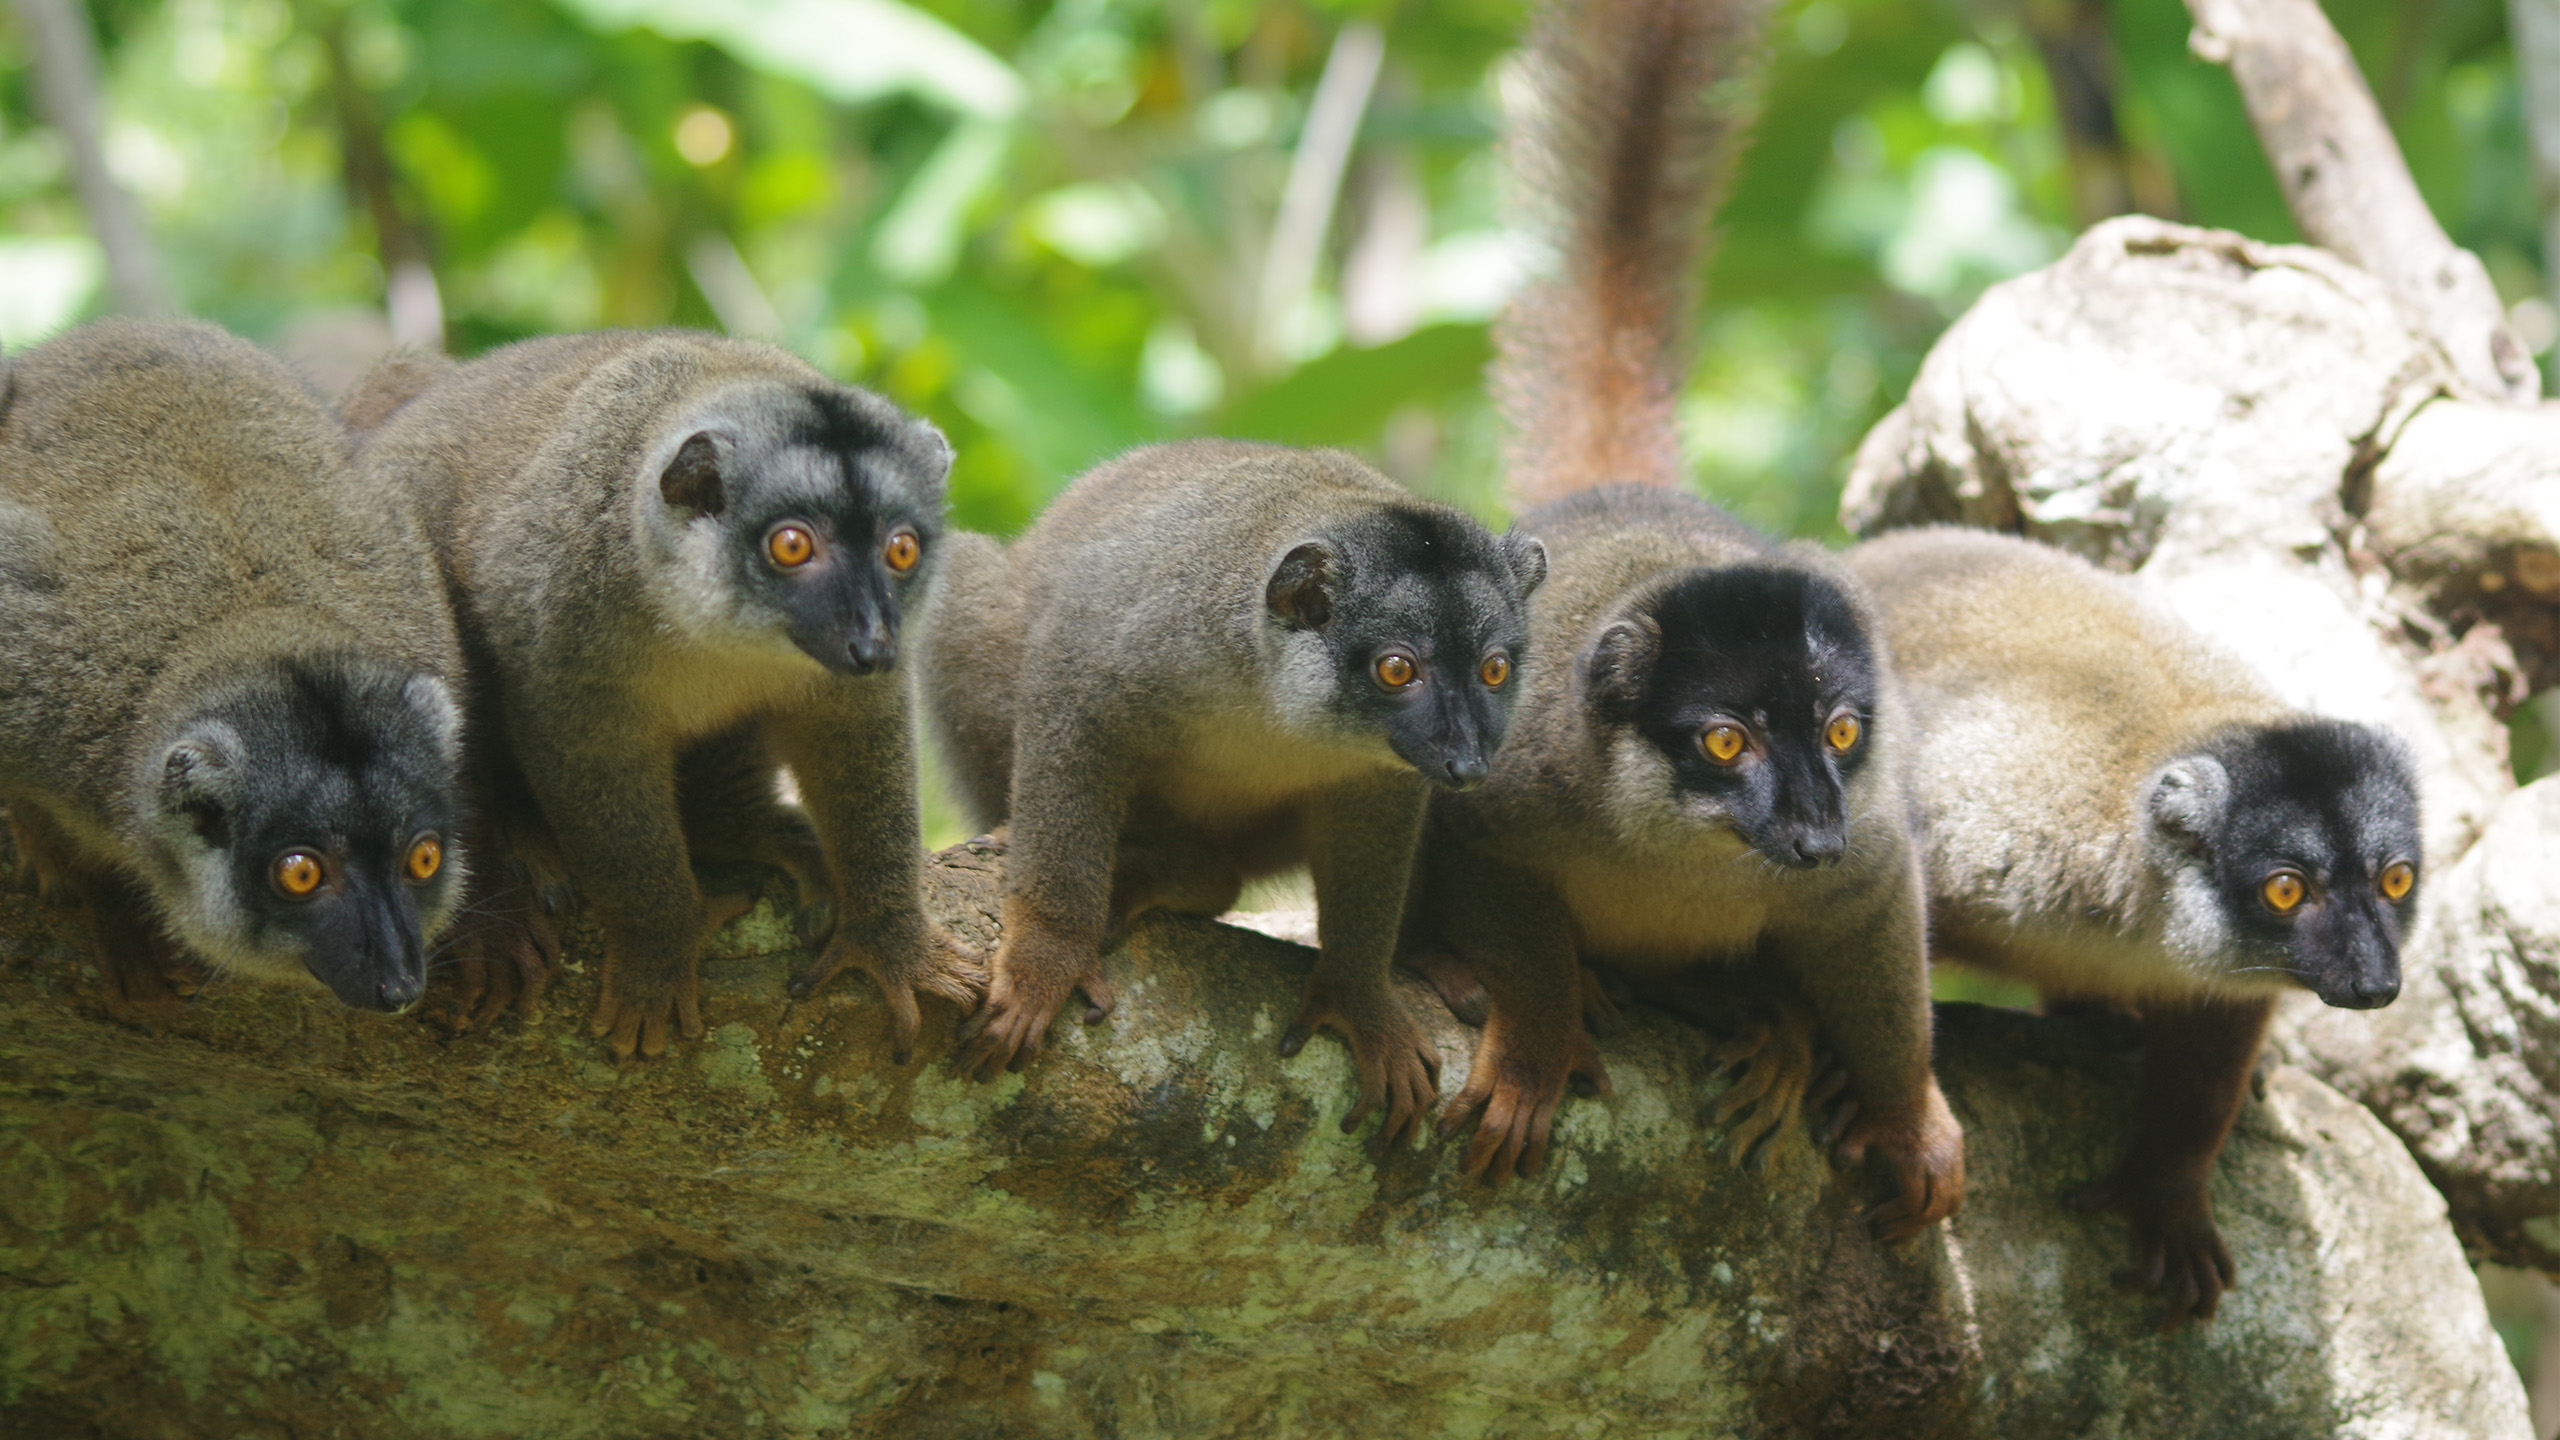 Braune Lemuren (Eulemur fulvus) sind weit verbreitet und kommen inzwischen auch auf Nosy Be vor. | Jan Czerny, Shutterstock